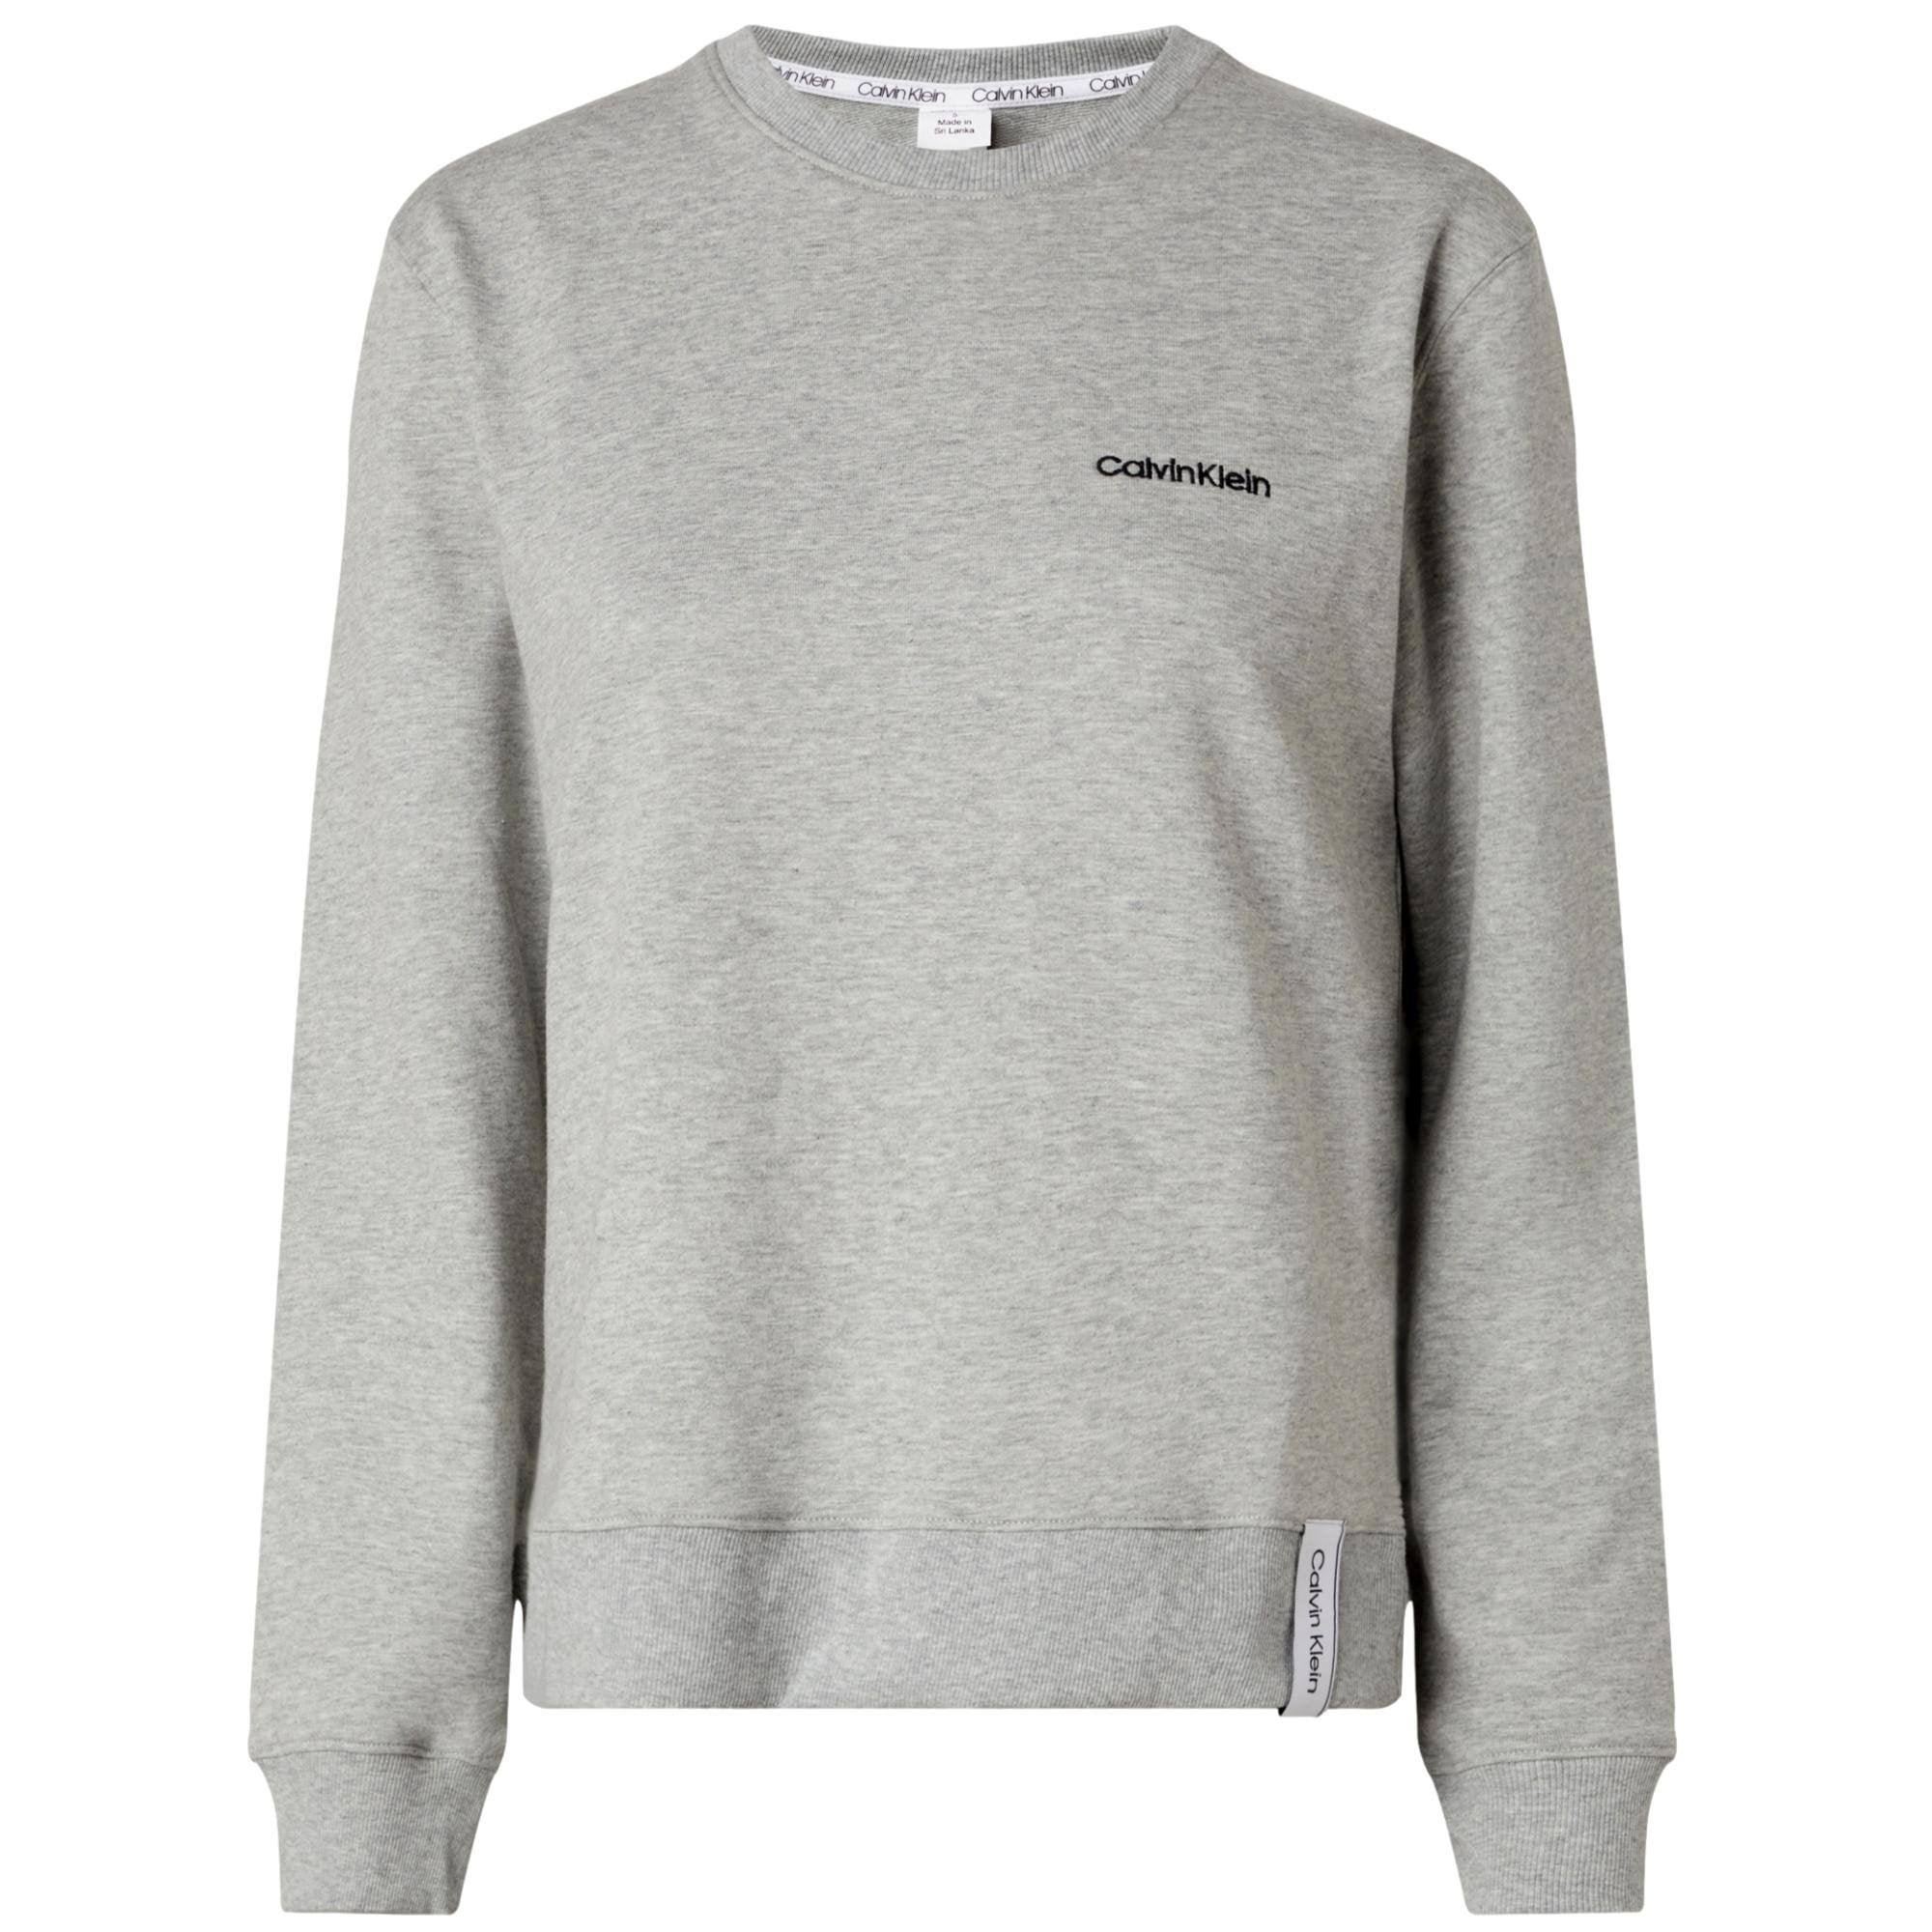 Grey & Apparel Accessories Sleepwear Sweatshirt - Klein - Modern Cotton Utility Bear Heather Calvin